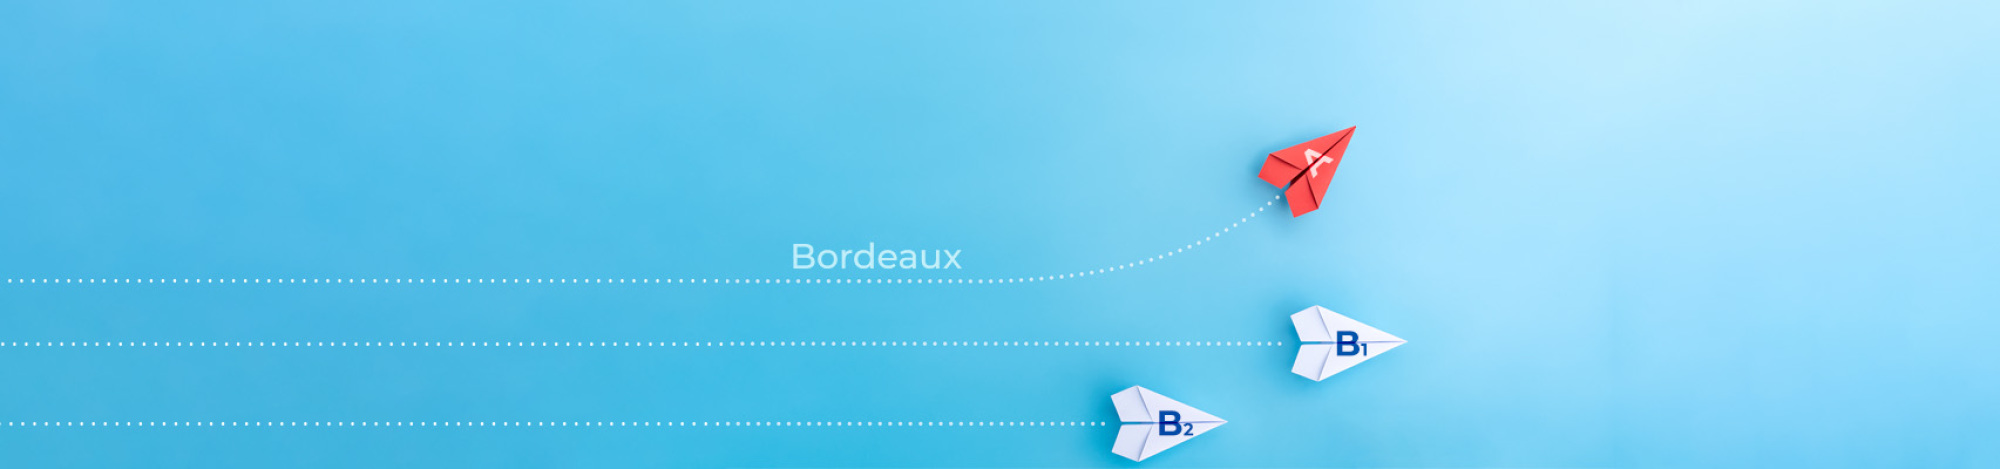 Passage de Bordeaux et quelques communes de Gironde en zone A Pinel et PTZ